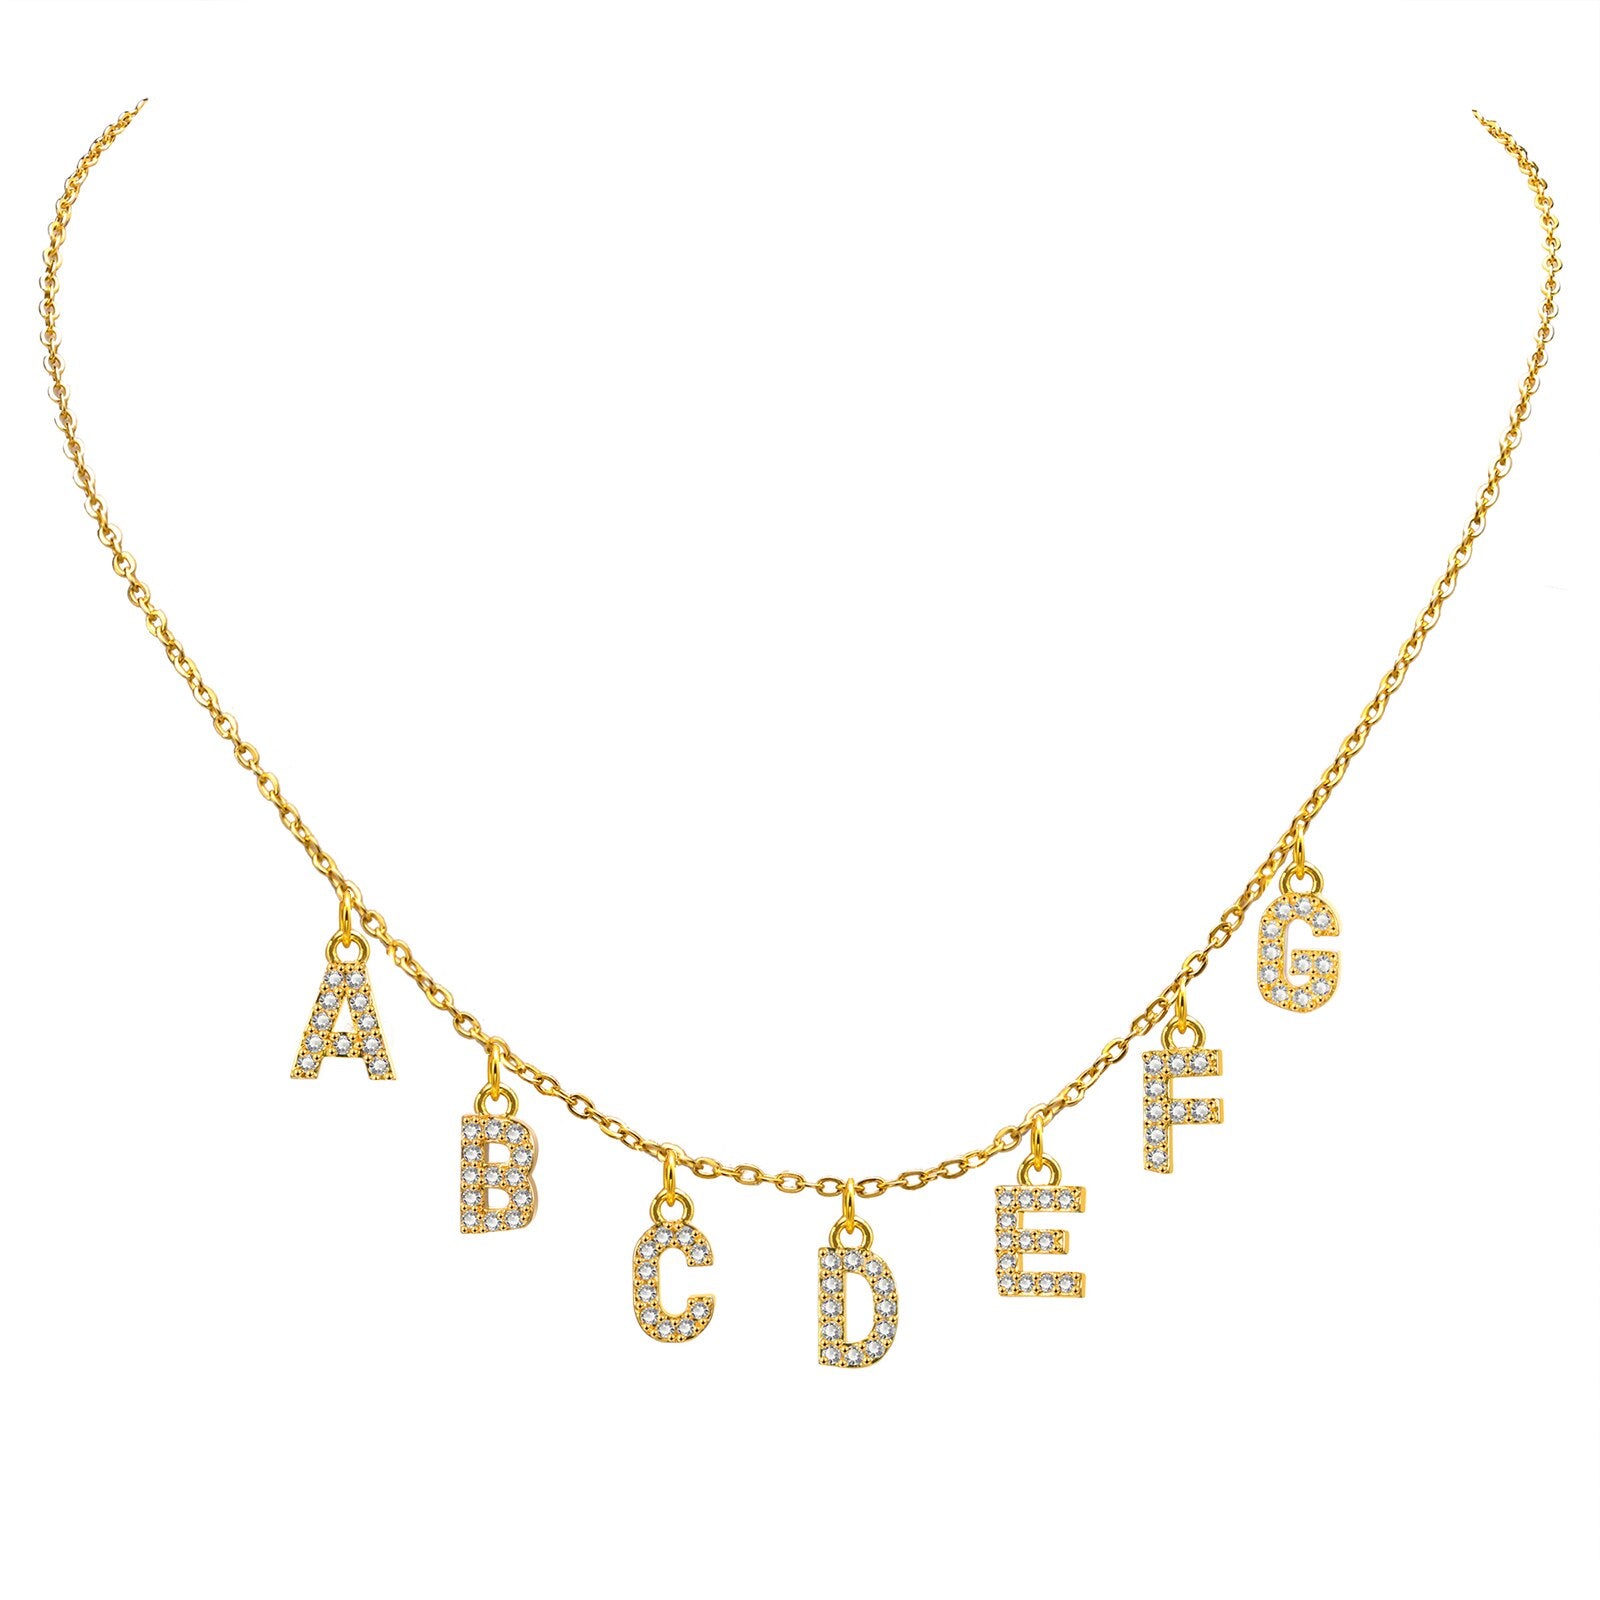 Personalisierte Buchstaben Halskette mit Namen, Gold / Minikauf.ch